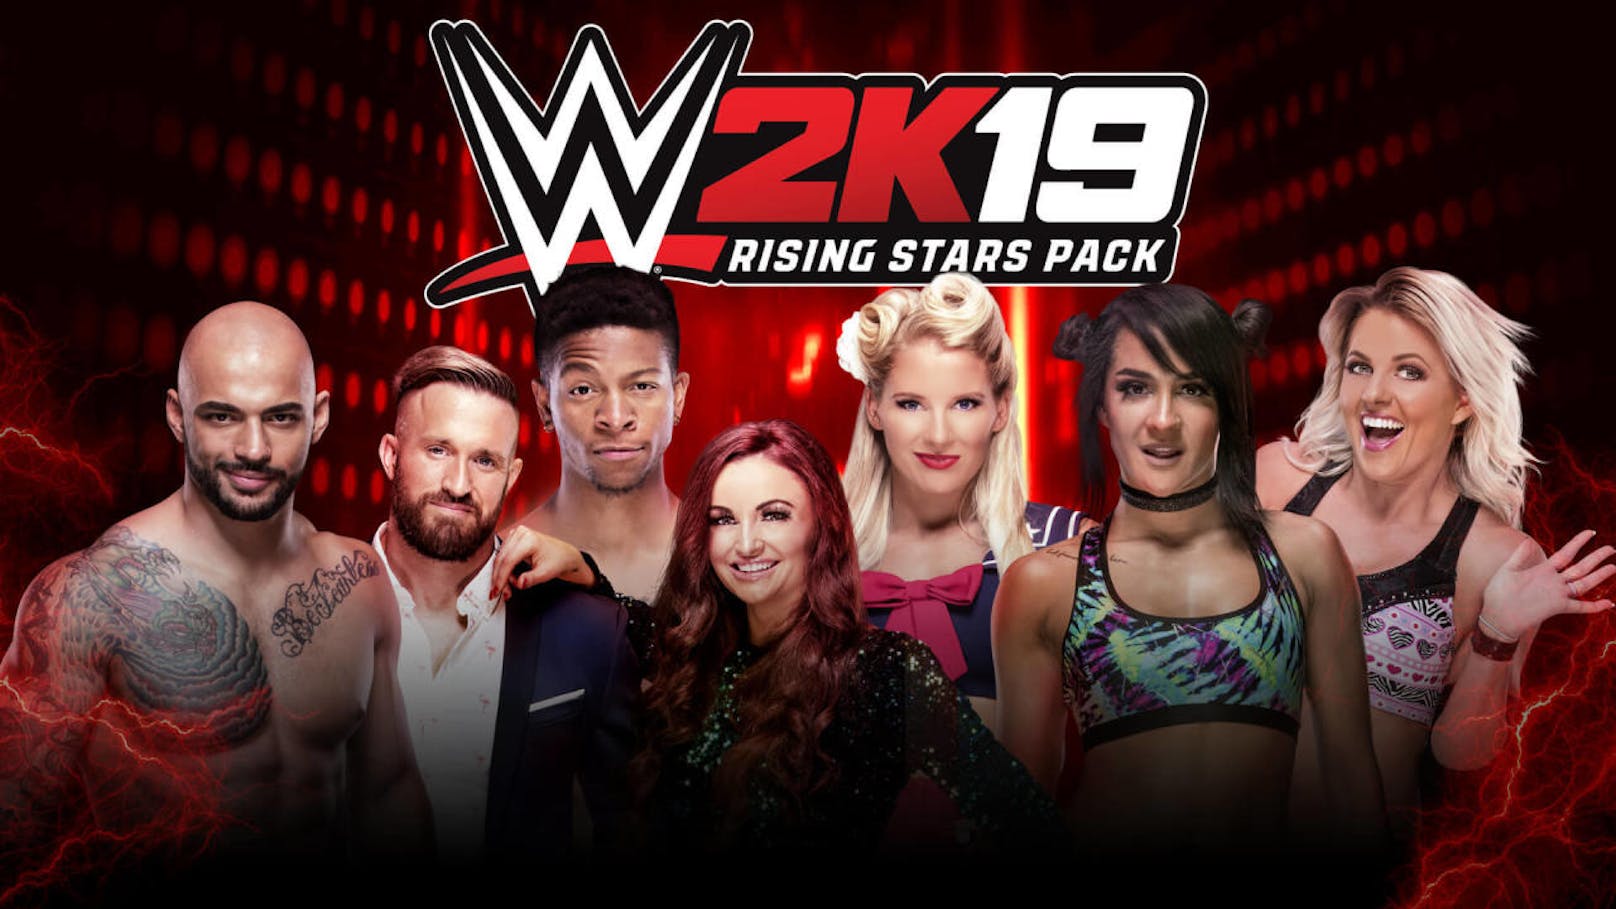 2K gab bekannt, dass der Rising Stars Pack DLC für WWE 2K19, der den Fans einige der heißesten WWE-, NXT- und 205 Live-Superstars bringt, ab sofort zum Kauf um 9,99 Euro erhältlich ist. Zu den Neuzugängen zählen Candice LeRae, Dakota Kai, Lacey Evans, Lio Rush, Mike Kanellis, Maria Kanellis und Ricochet.